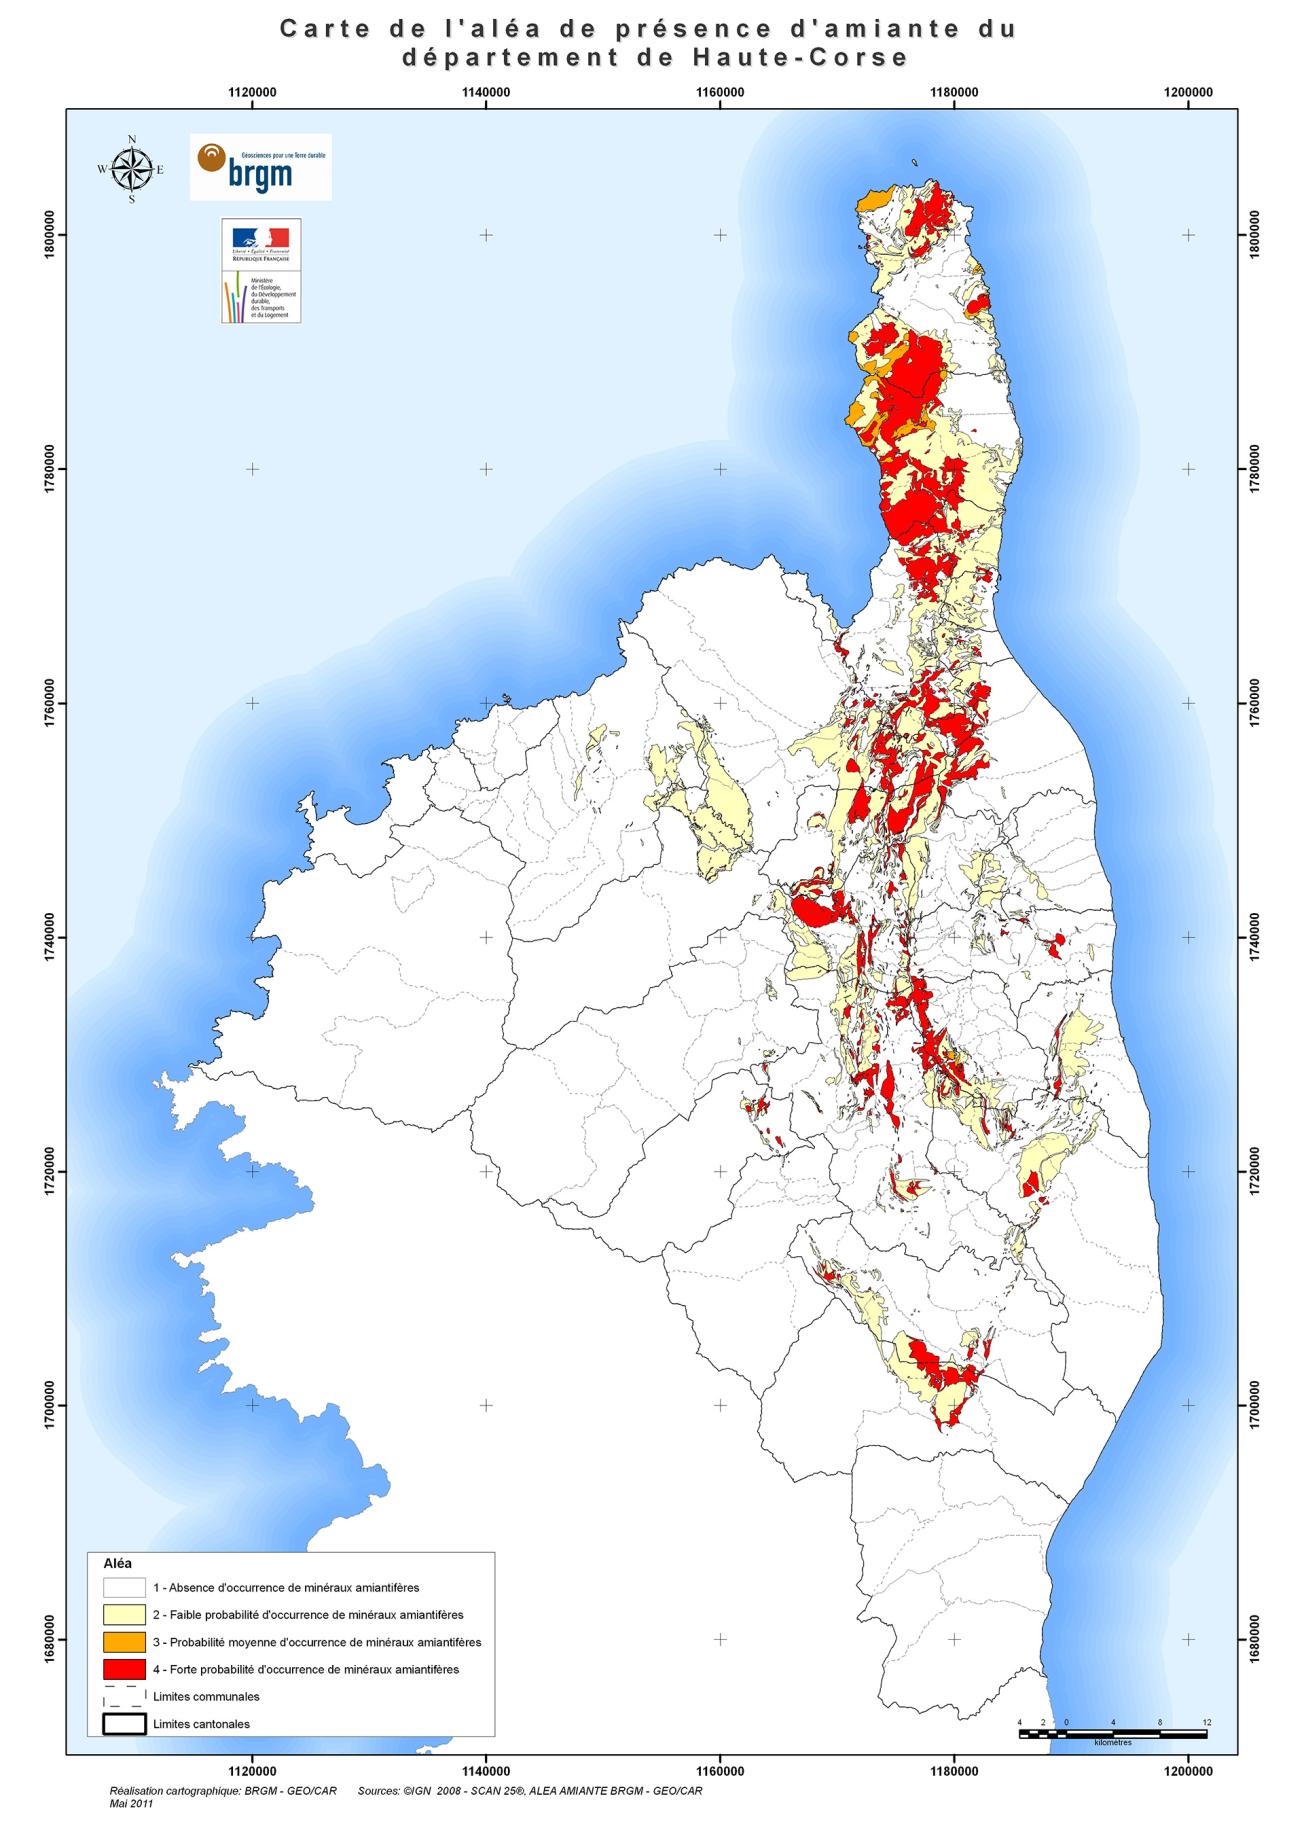 Asbestos hazard map of Upper Corsica 